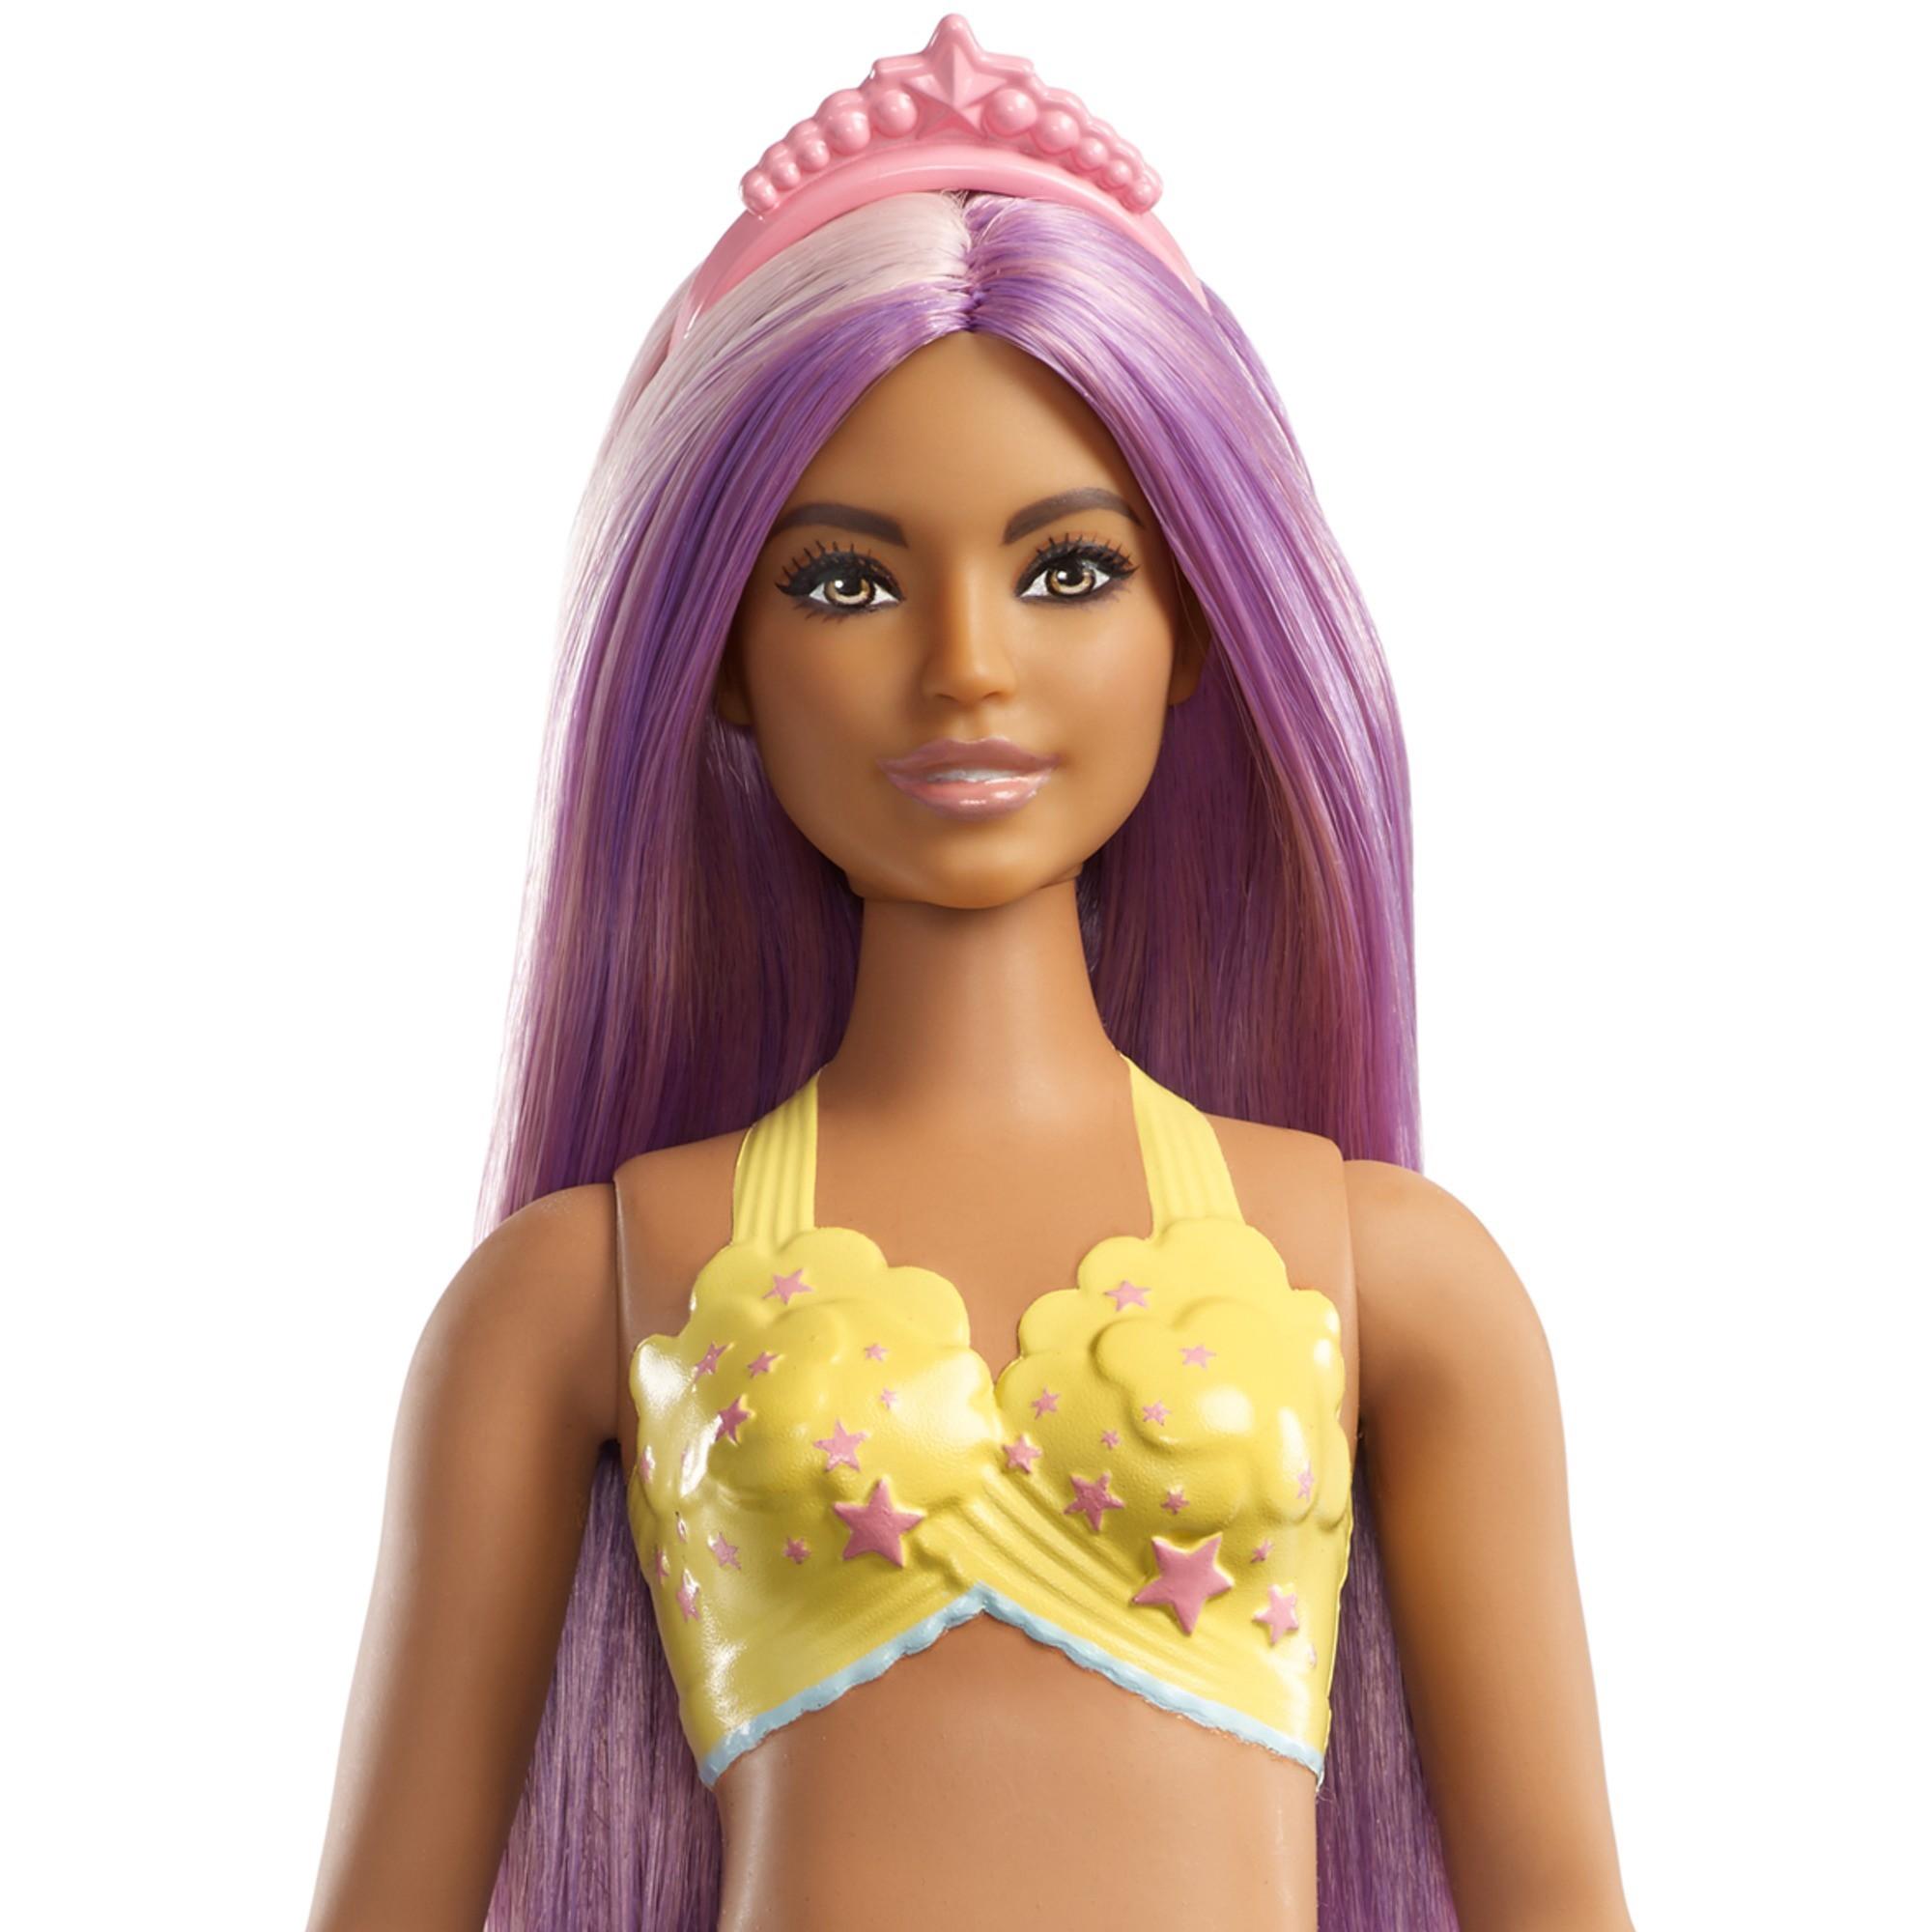 Barbie Dreamtopia Mermaid Doll with Long Purple Streaked Hair - image 3 of 8